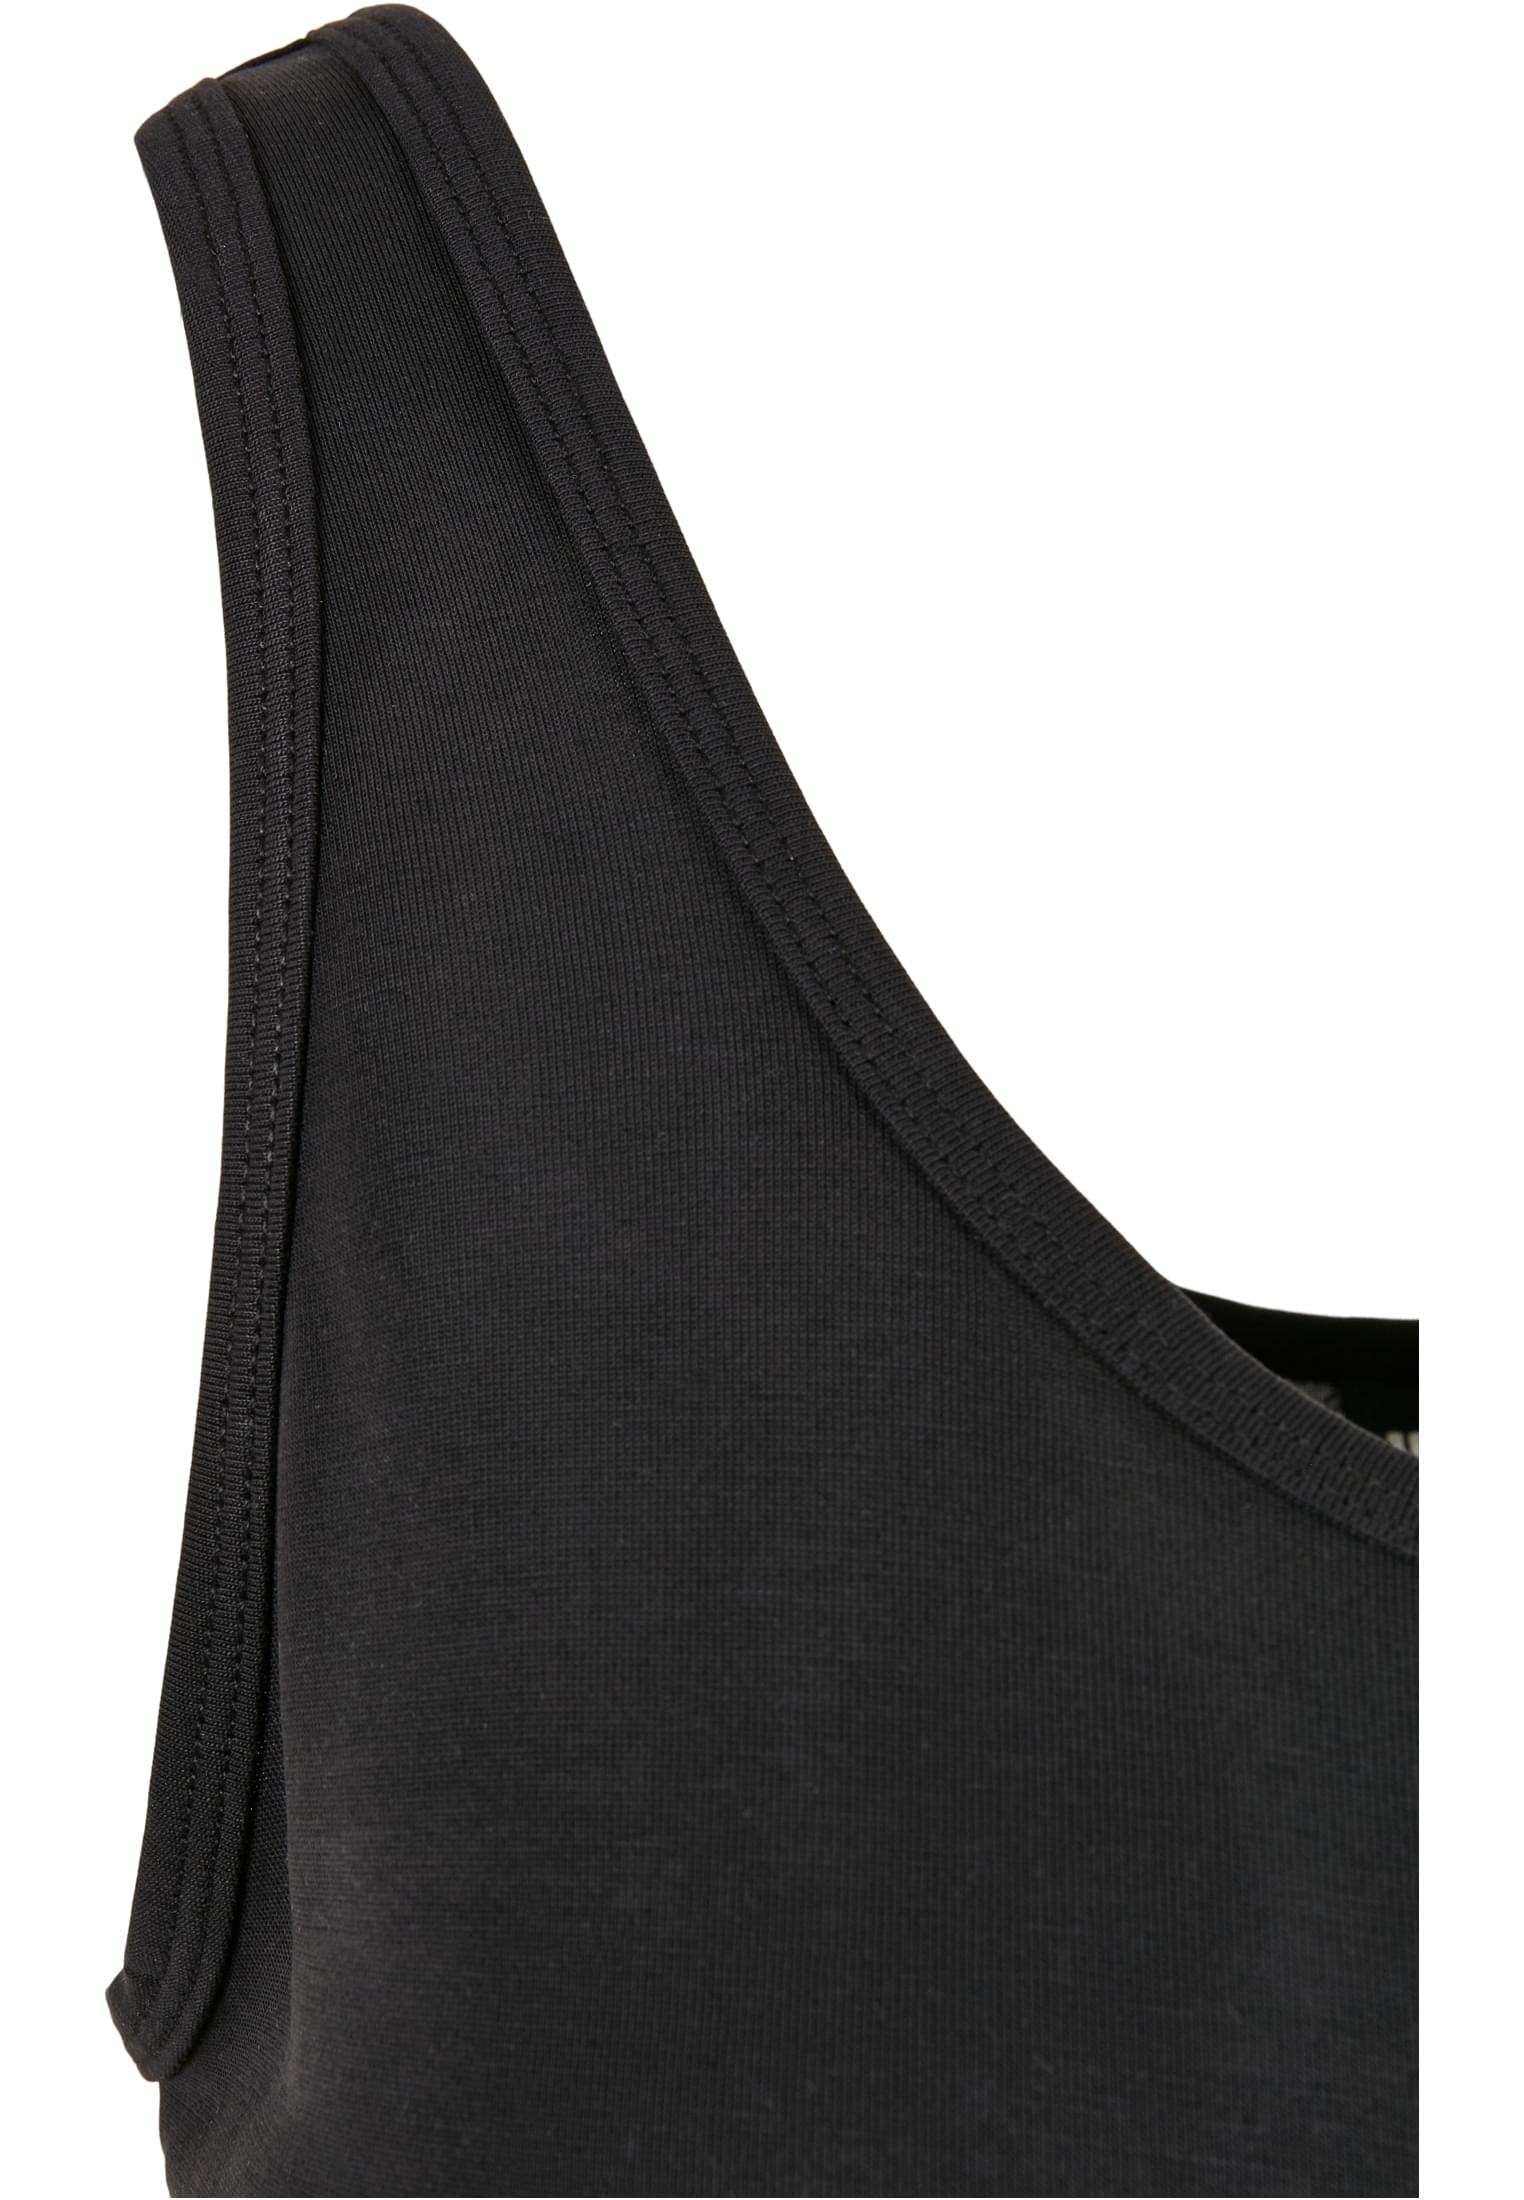 Frauen Ladies Modal Loose Top in Farbe black